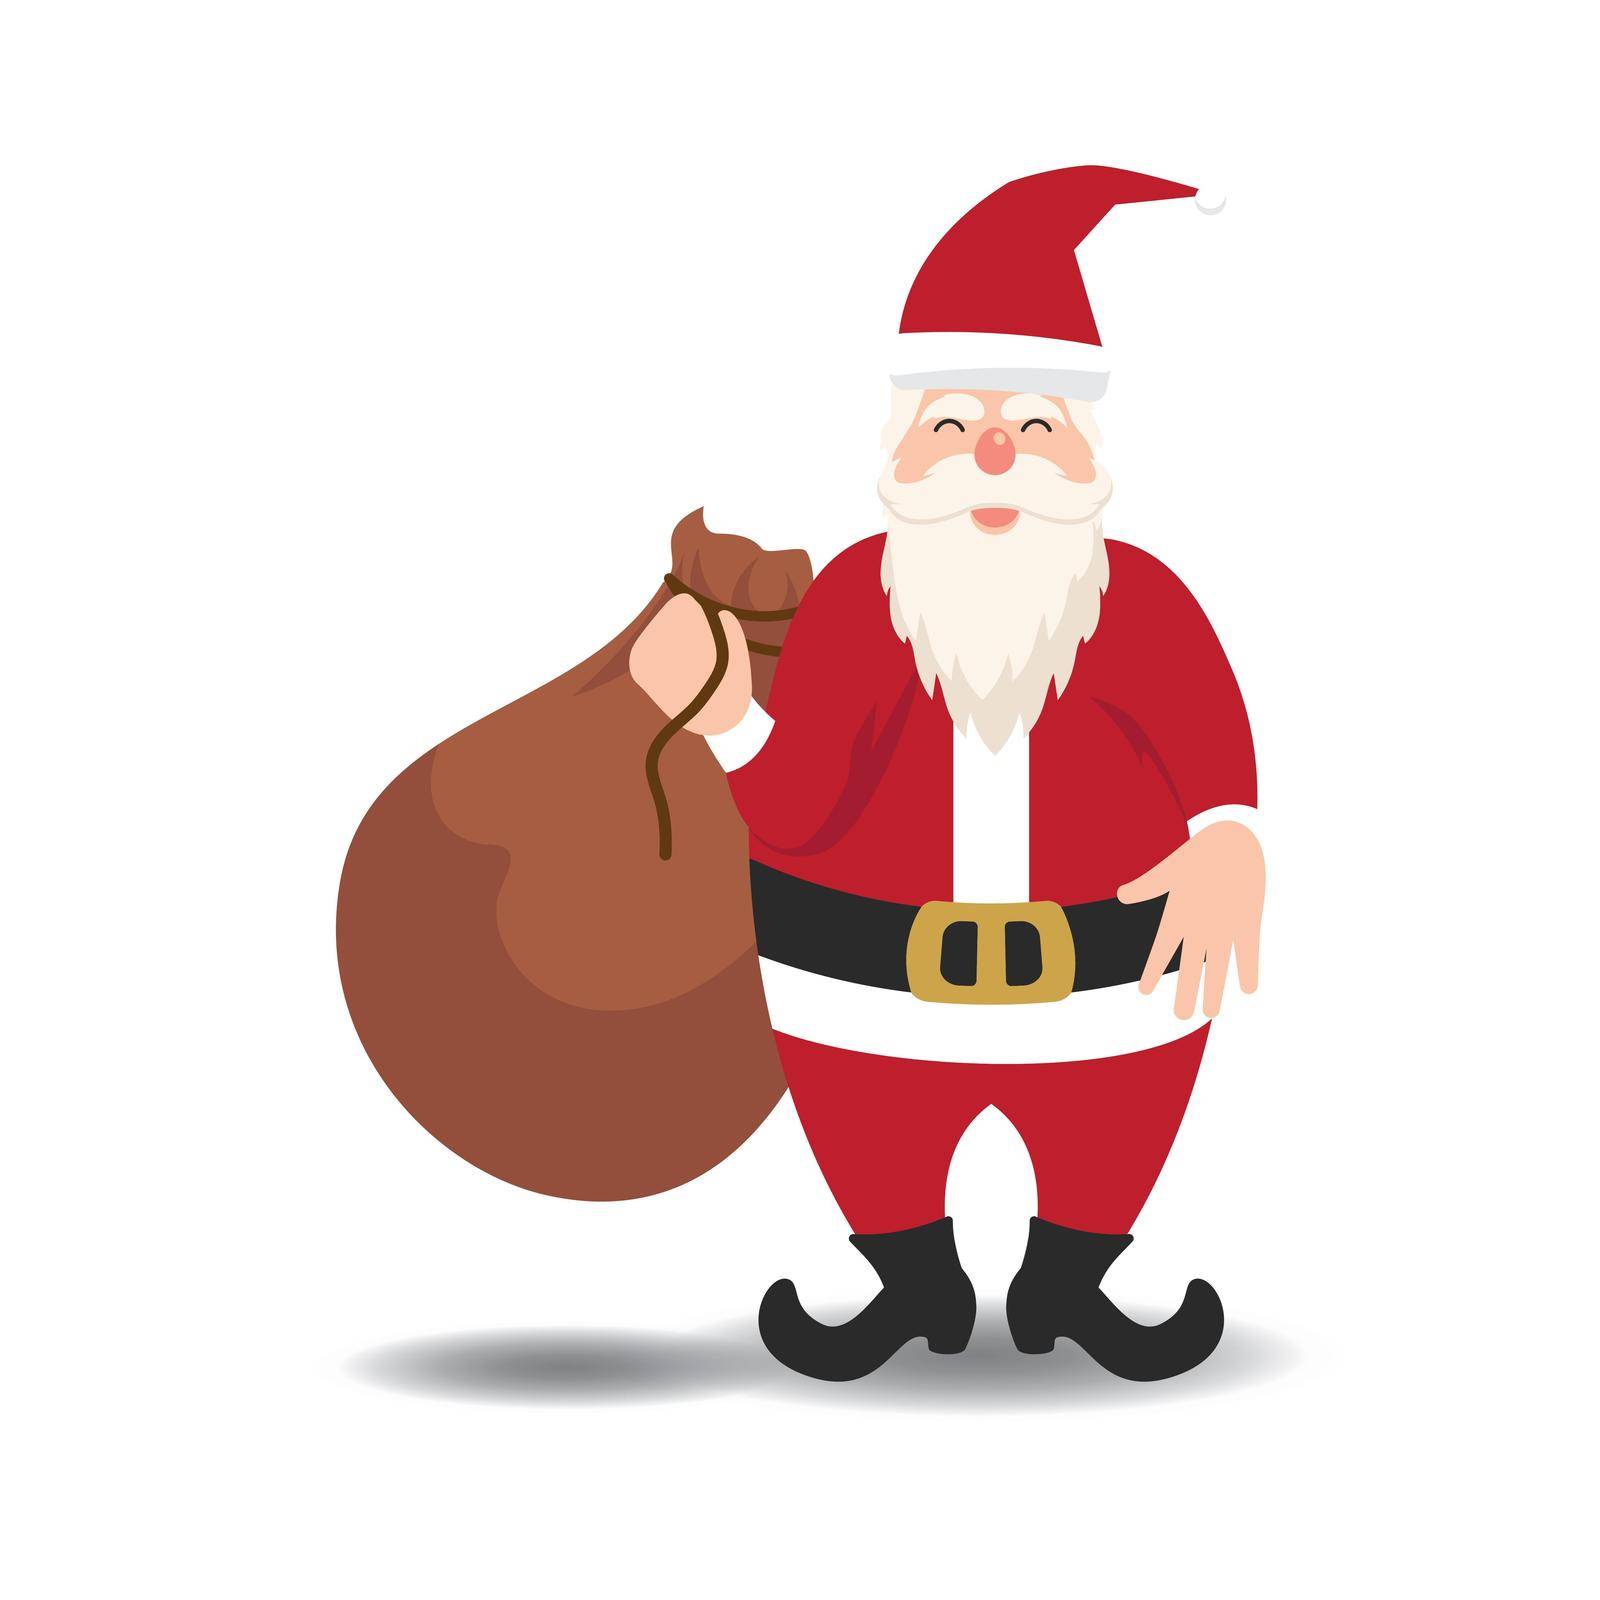 Santa claus and santa hat illustration by awk